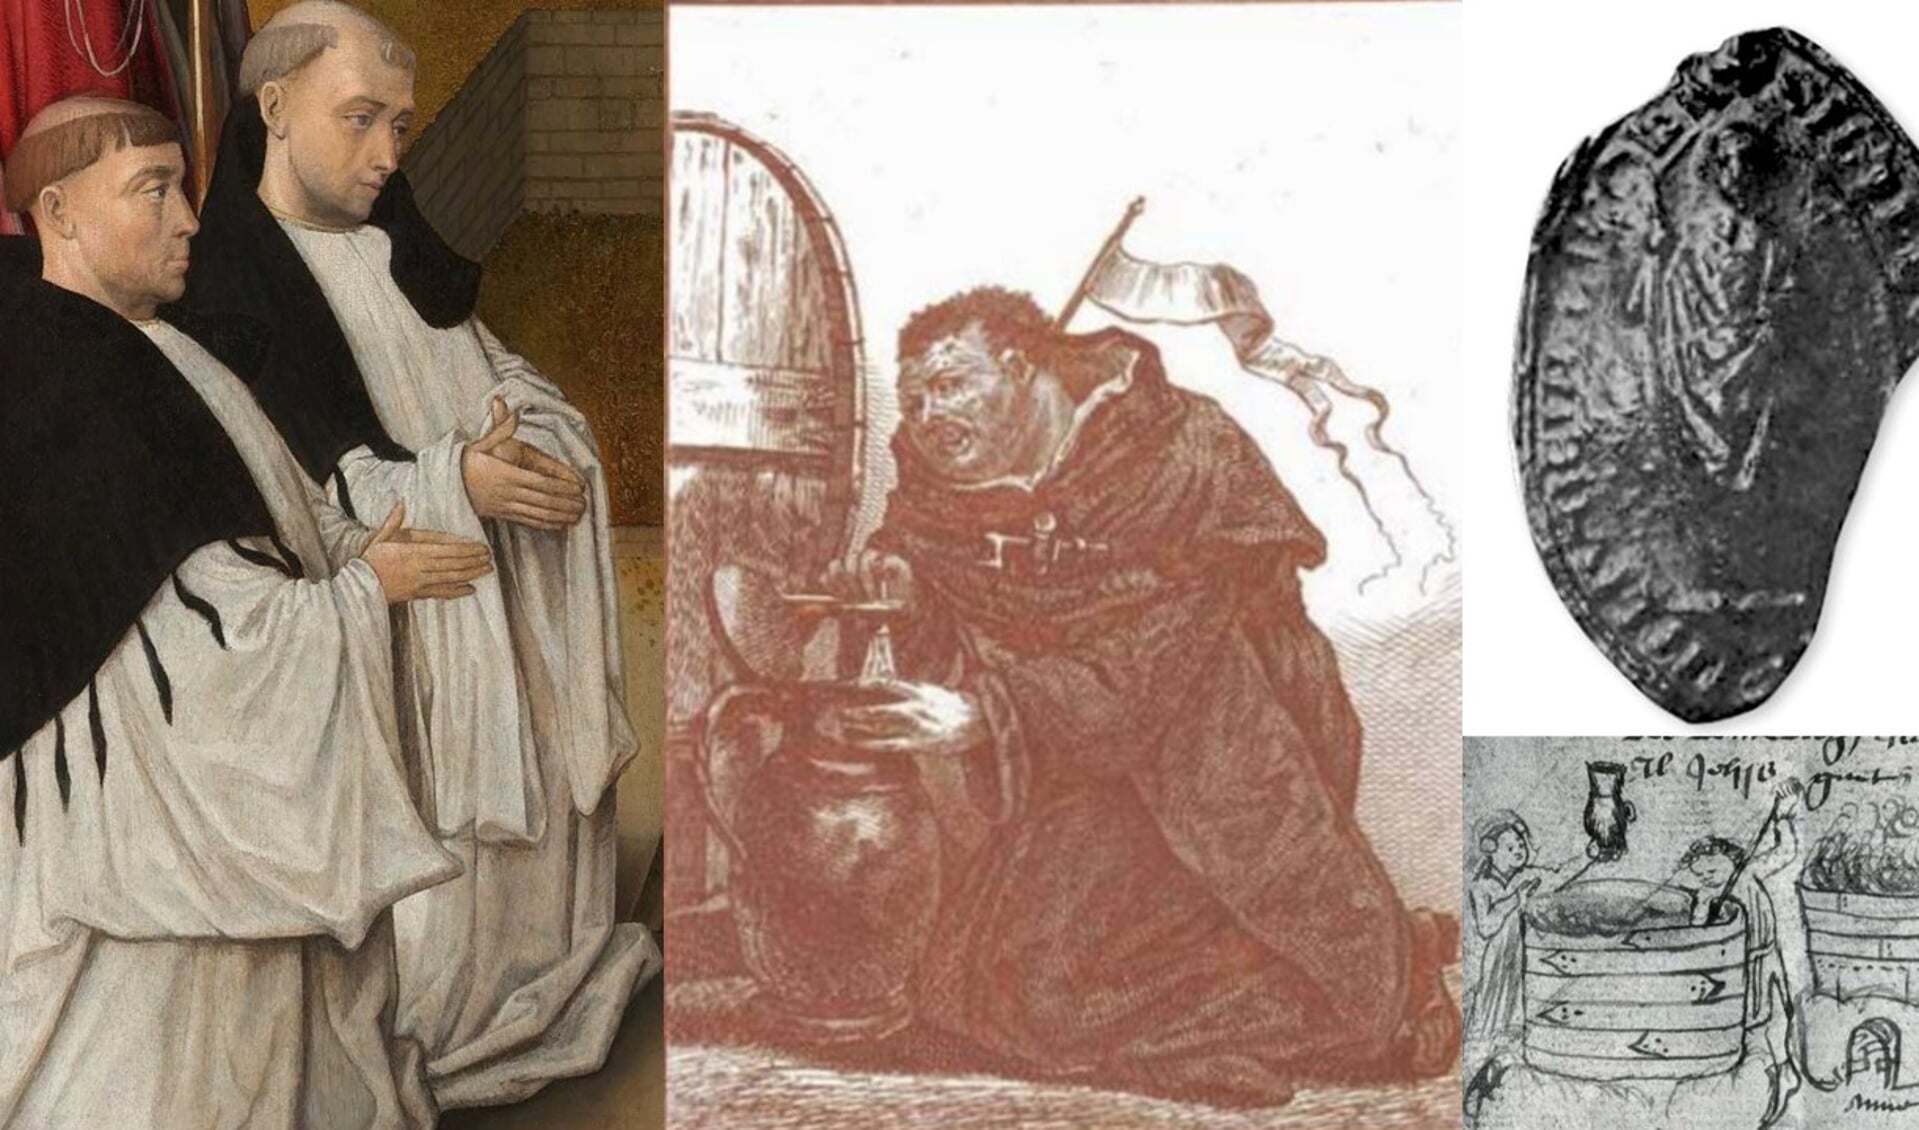 Vlnr: Ludingakerker kloosterlingen; ‘Monnik tapt bier uit een vat’: Spotprent van Jacob Gole; Zegel van abt van Ludingakerke; Middeleeuwse brouwerij.  